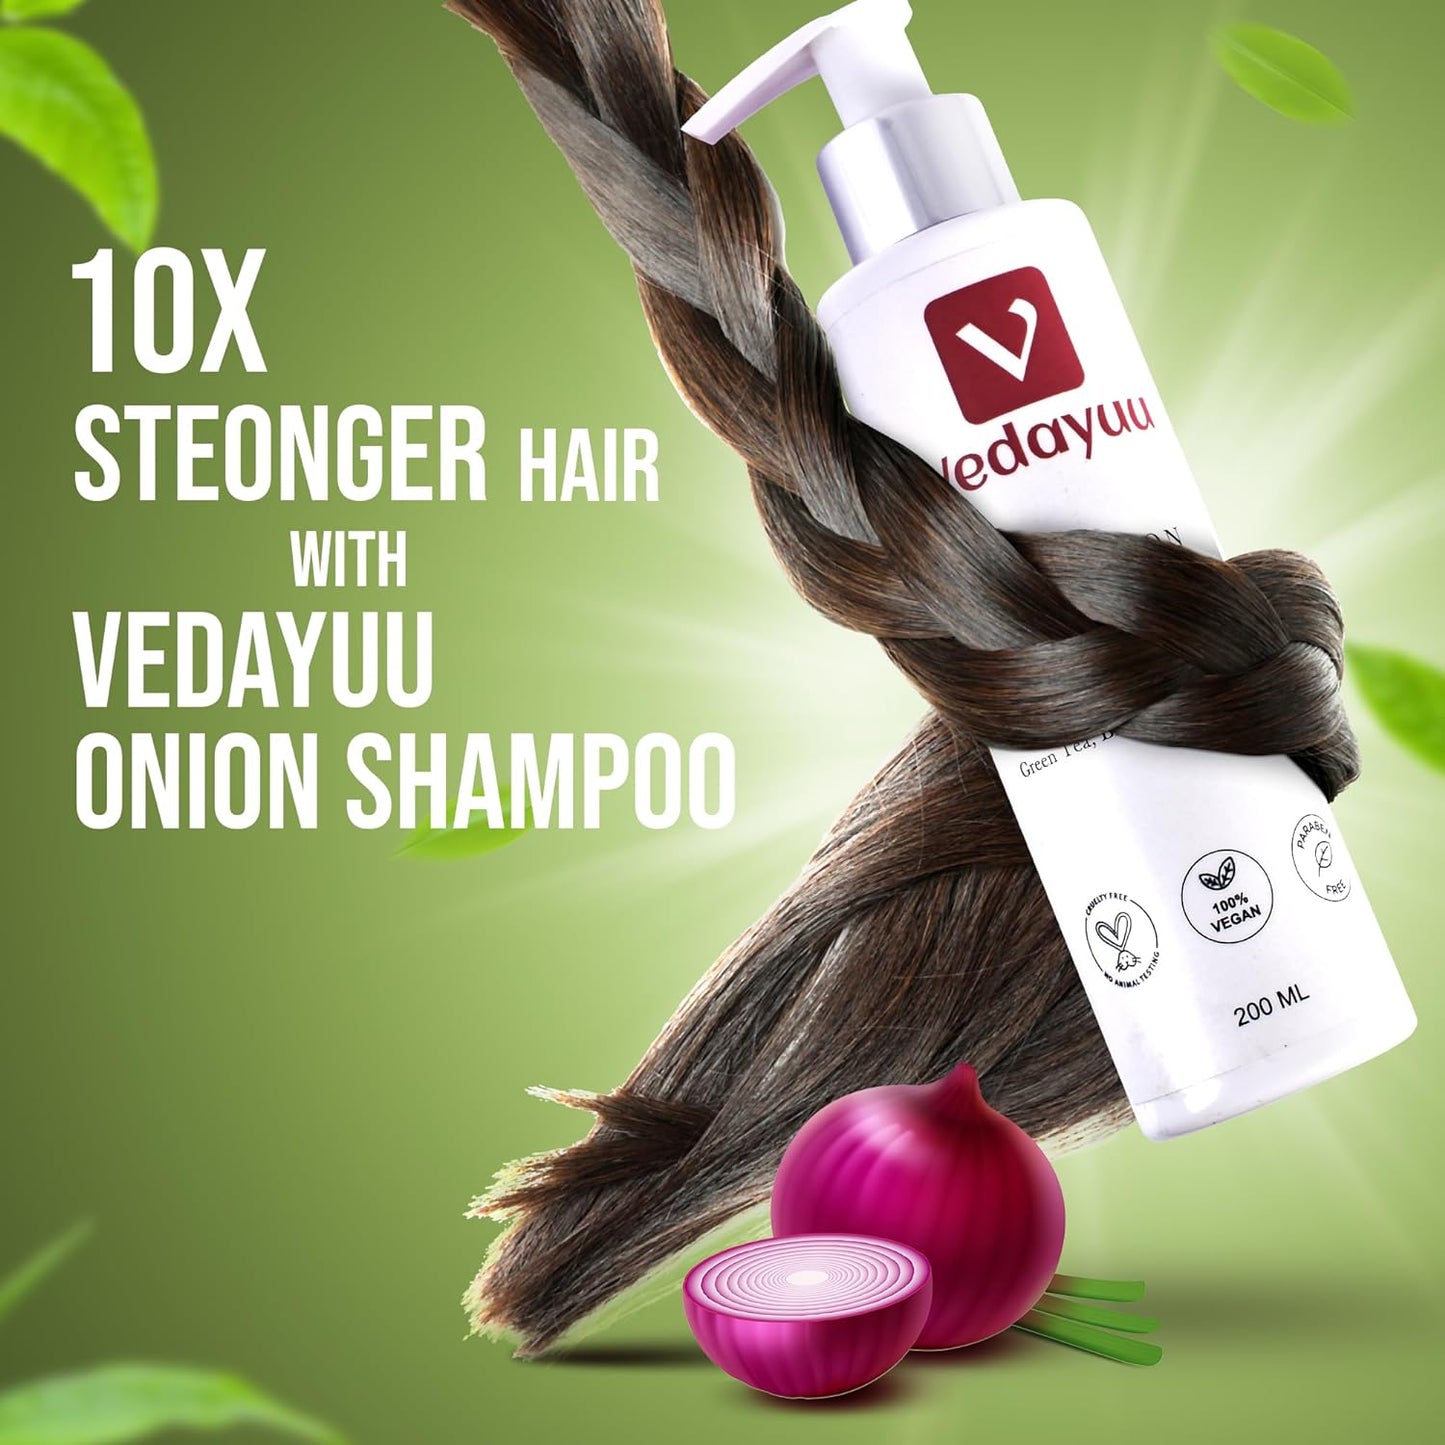 Vedayuu Anti Hair Fall Express Spa Range Hair Care Set with Onion Hair Oil + Onion Shampoo for Hair Fall Control 200ml